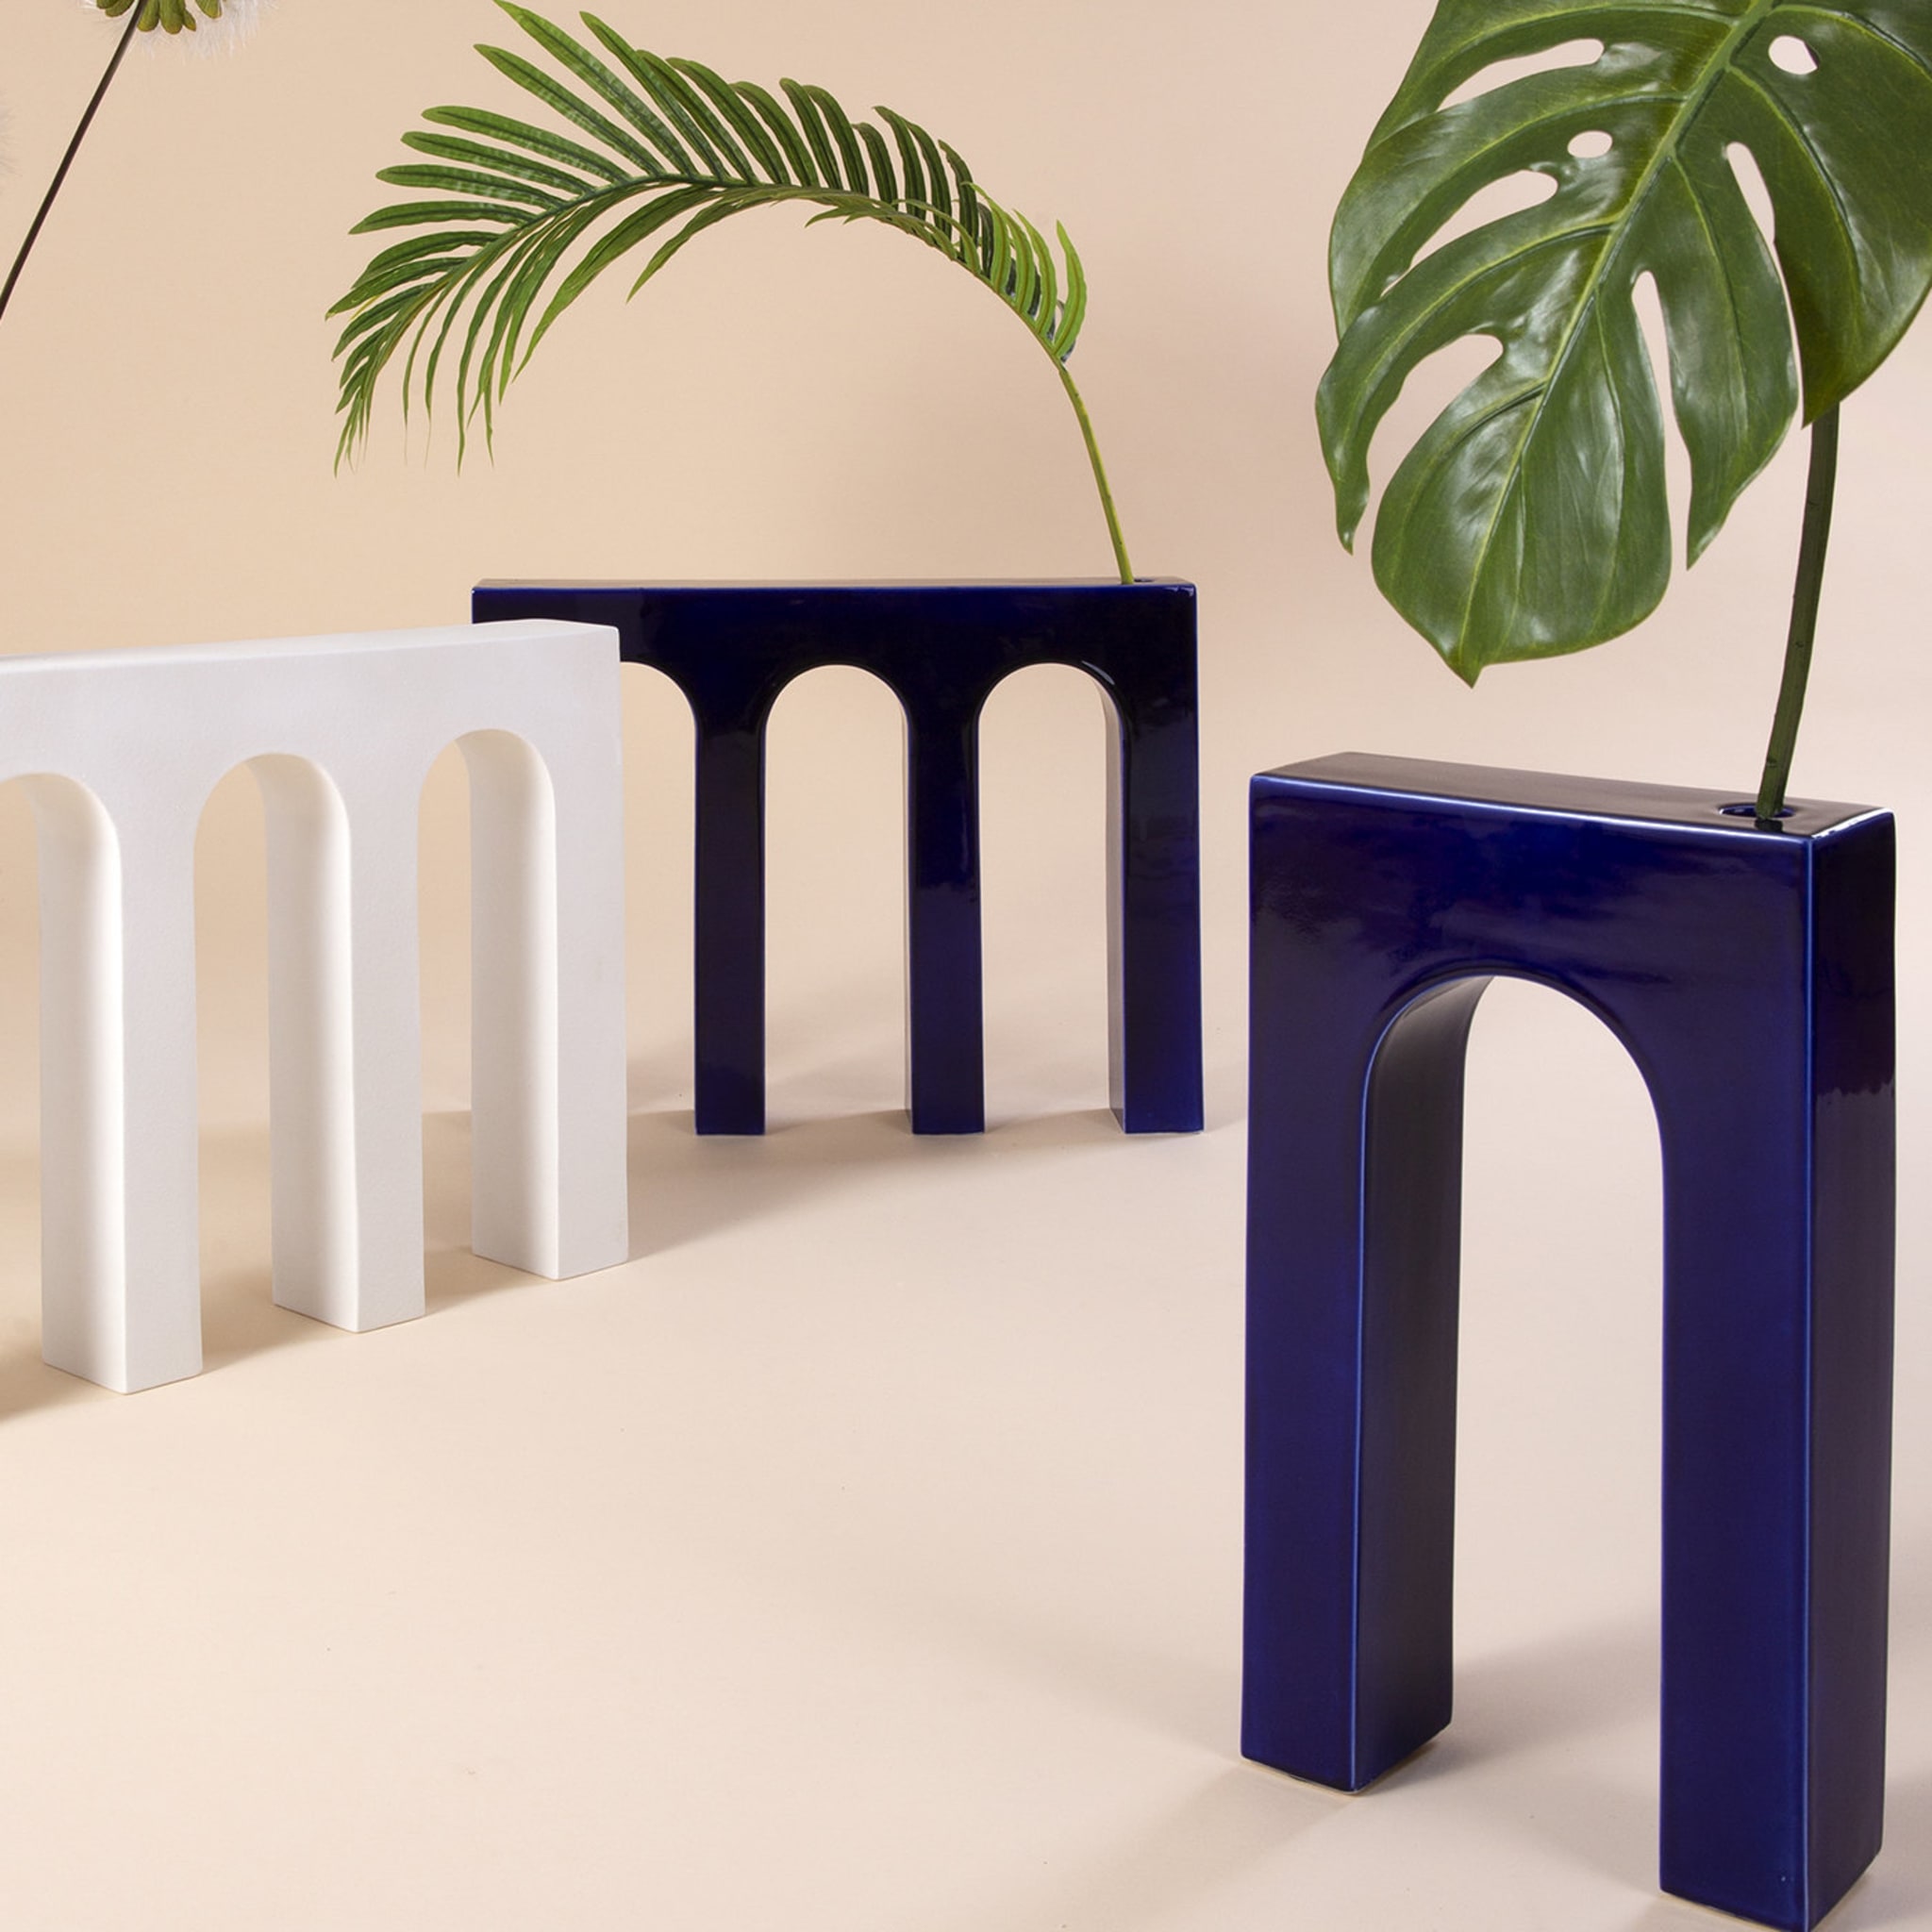 Architetture Domestiche Blue Ceramic Vase #1 - Alternative view 2